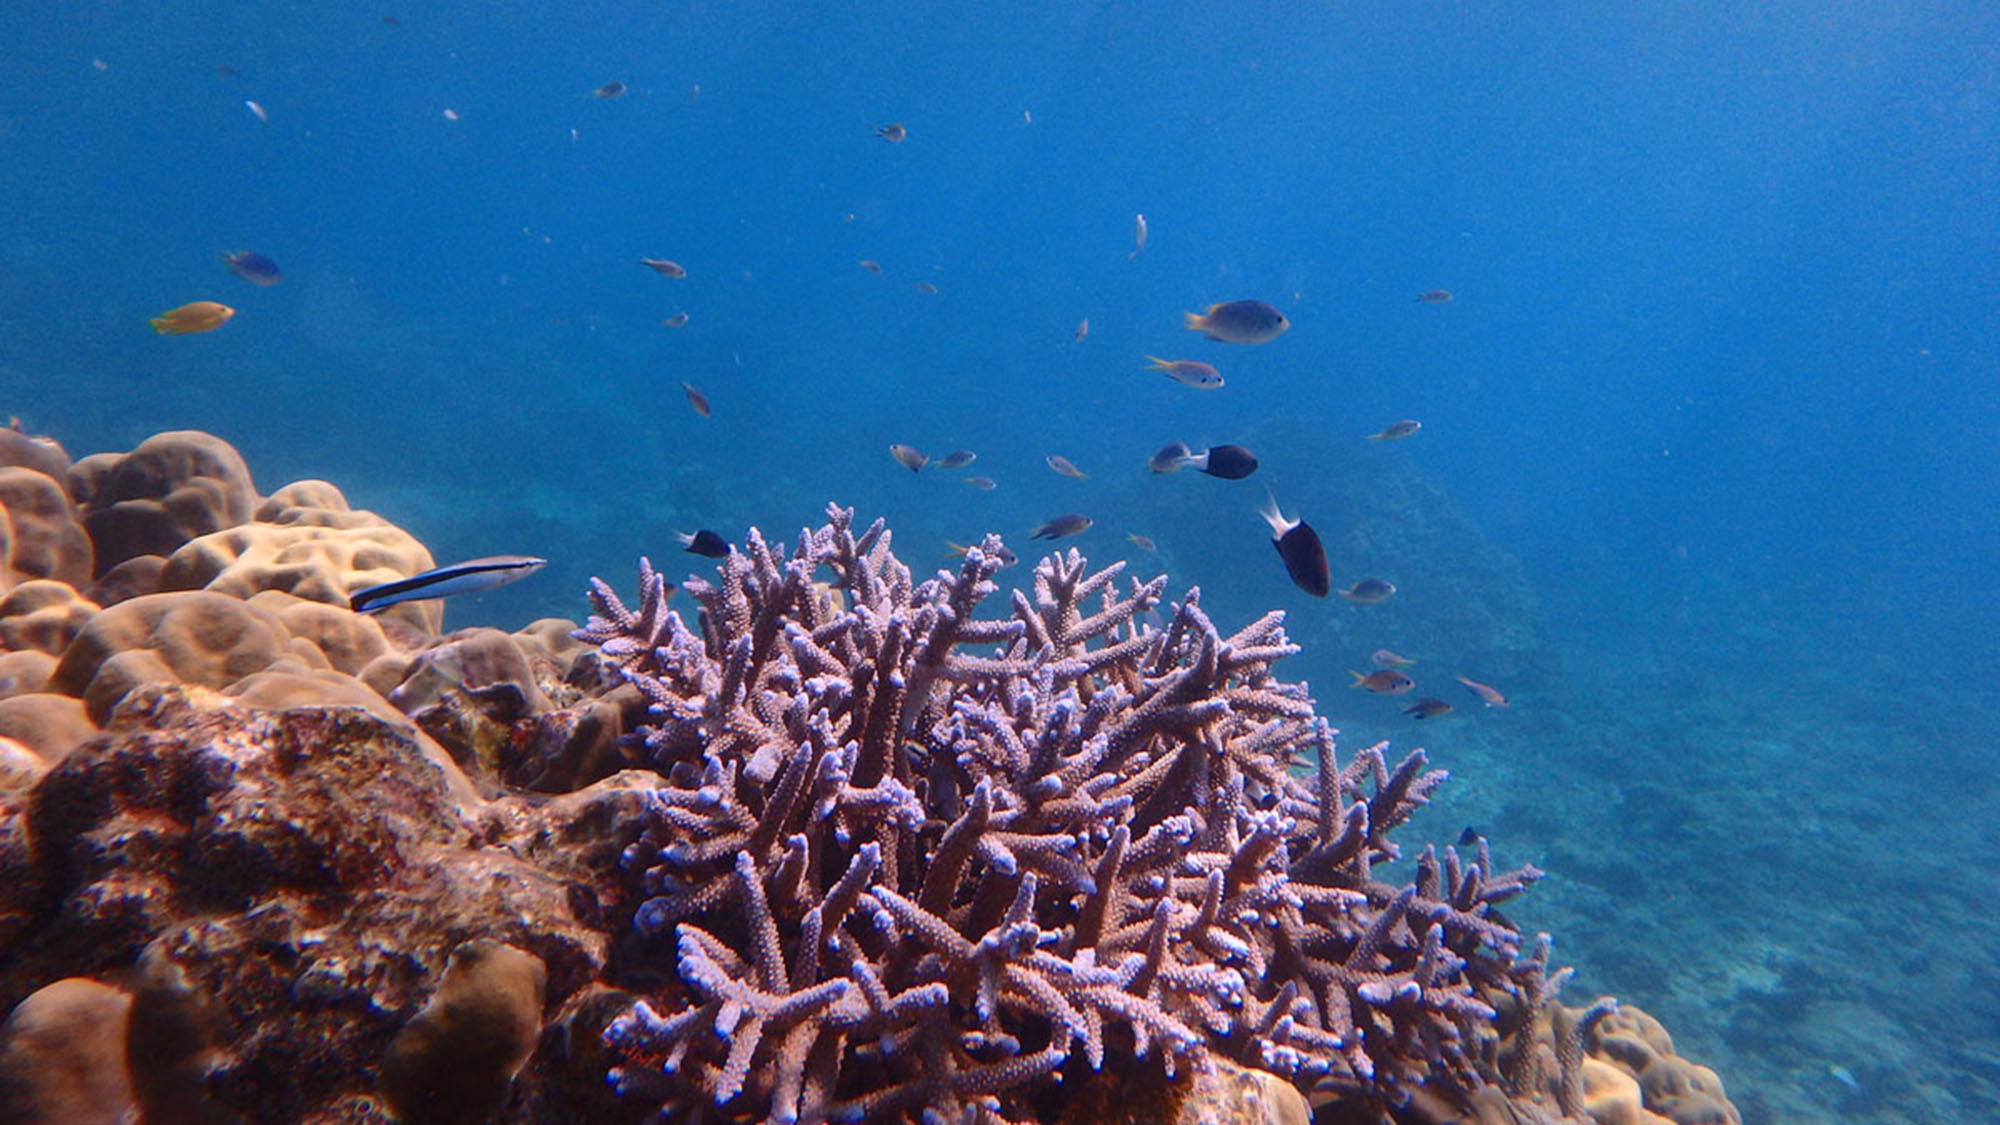 ・美しいサンゴ礁と魚たちが生息している海